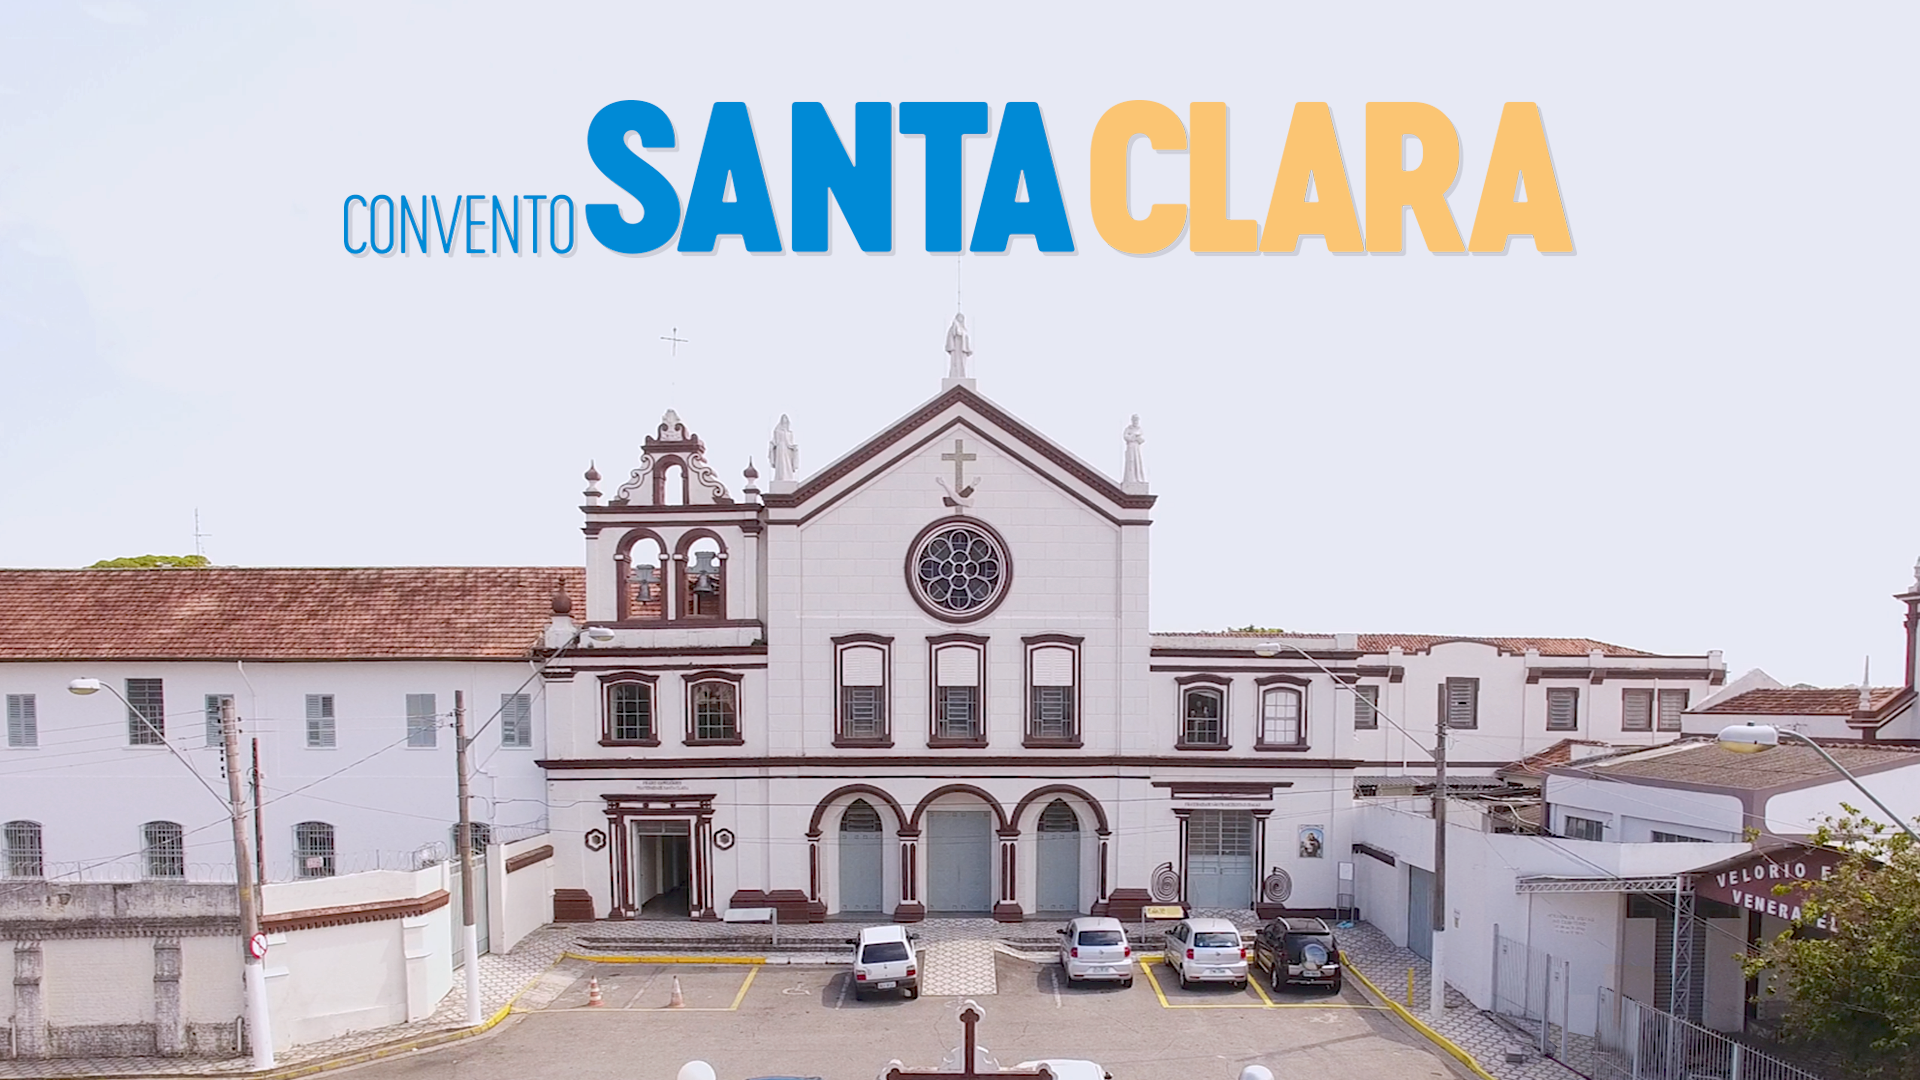 Convento Santa Clara – Revendo Taubaté – Rever Produções